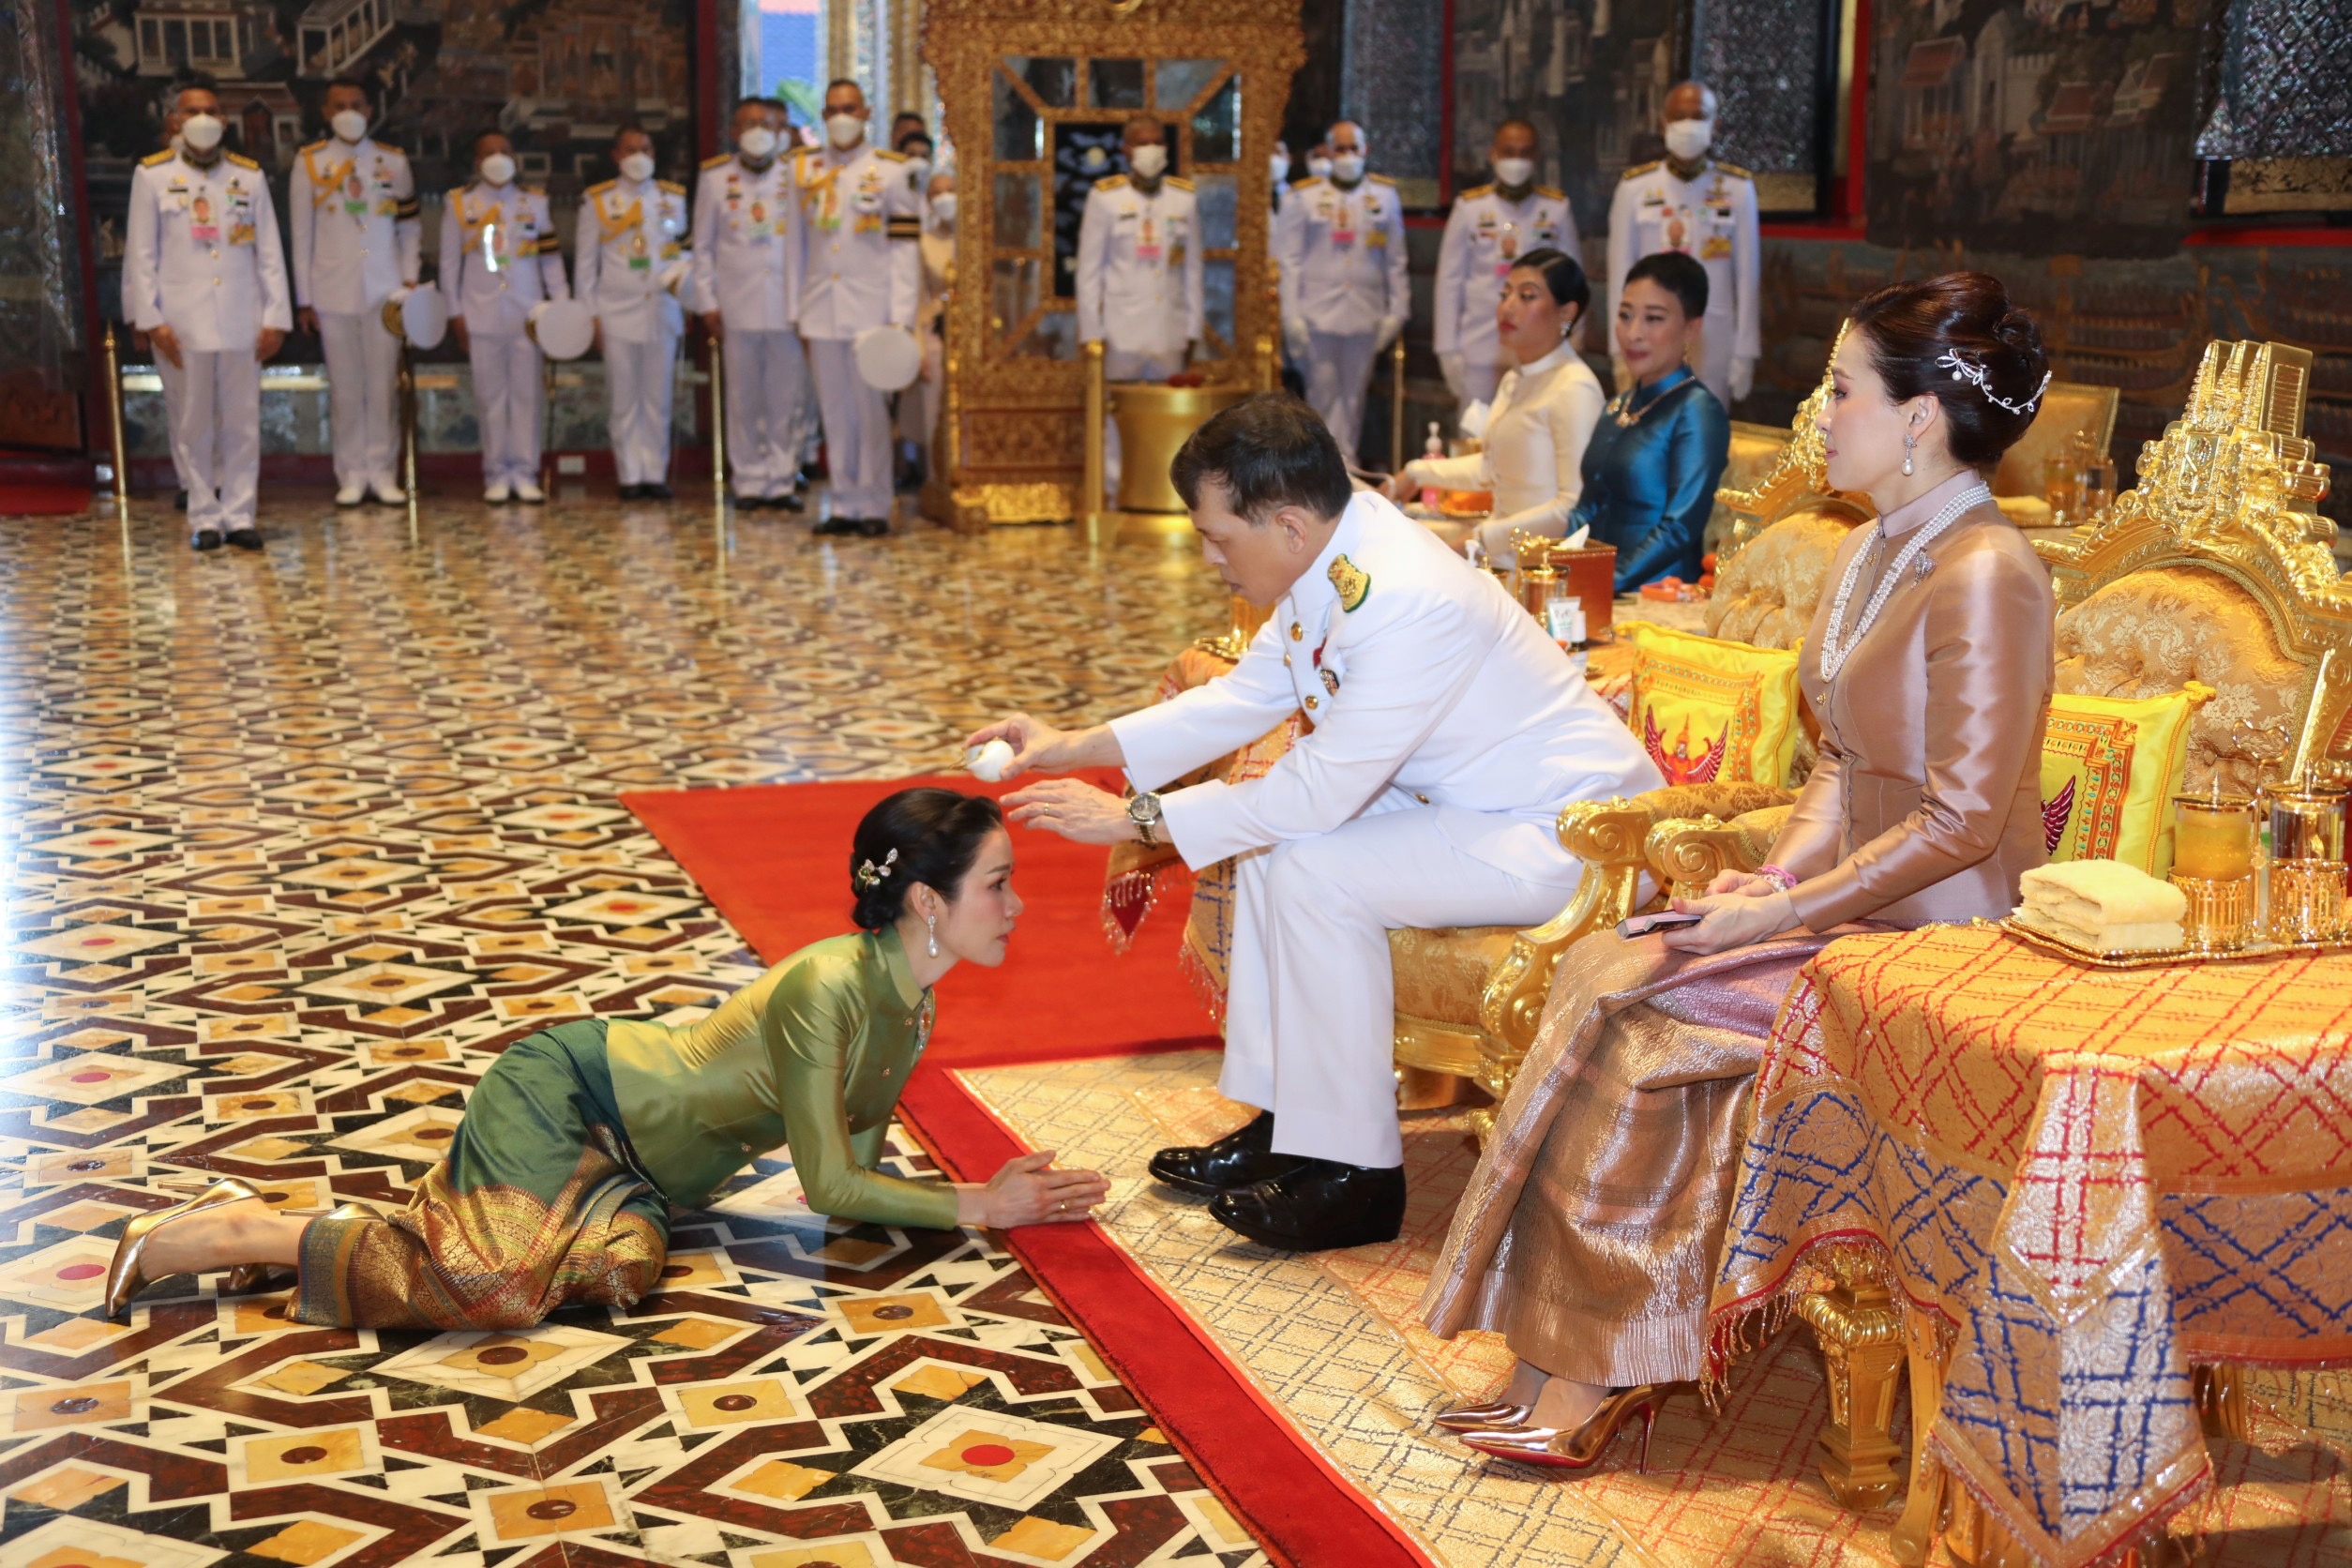 El rey de Tailandia Maha Vajiralongkorn, la reina Suthida y la noble consorte real Sineenat Wongvajirapakdi asisten a una ceremonia religiosa en el Gran Palacio de Bangkok, Tailandia, 20 de noviembre de 2021. Thailand Royal Household Bureau/Handout via REUTERS 